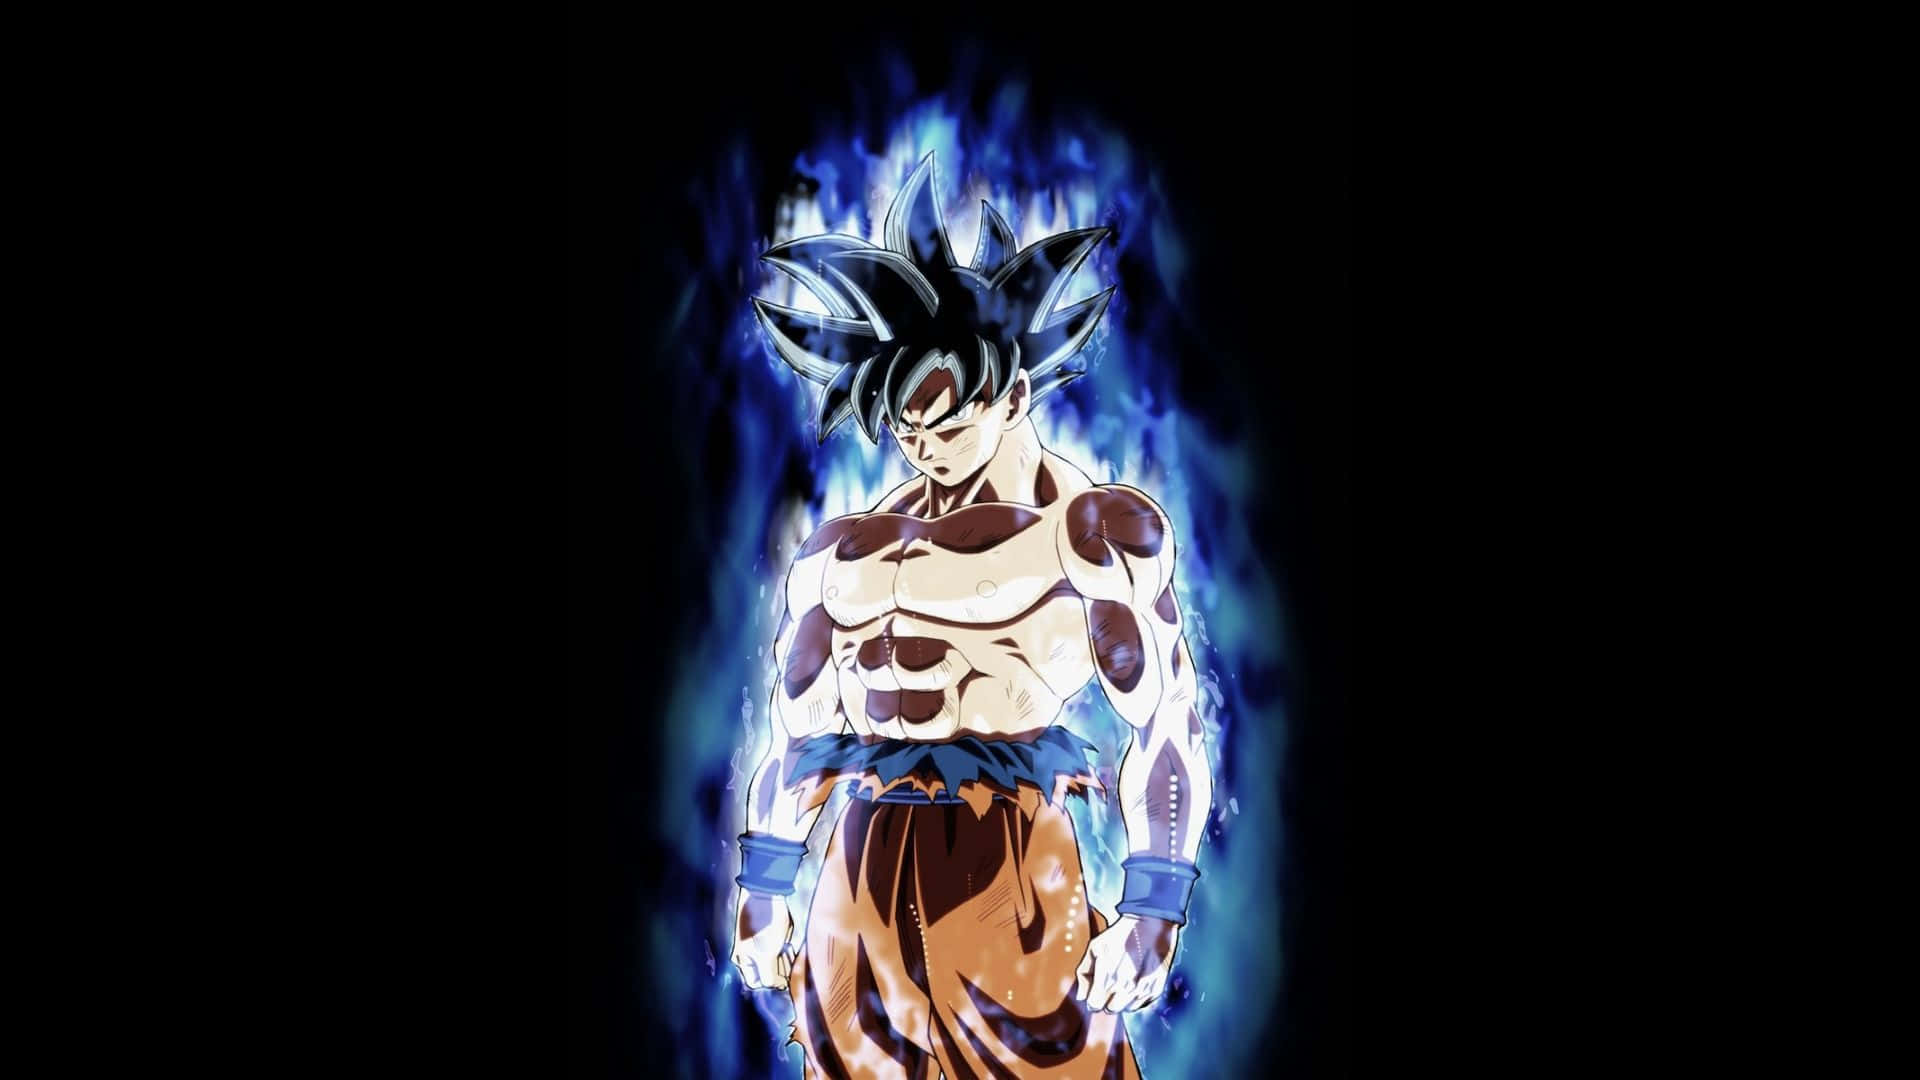 Gokubeherrscht Die Kraft Des Ultra Instincts